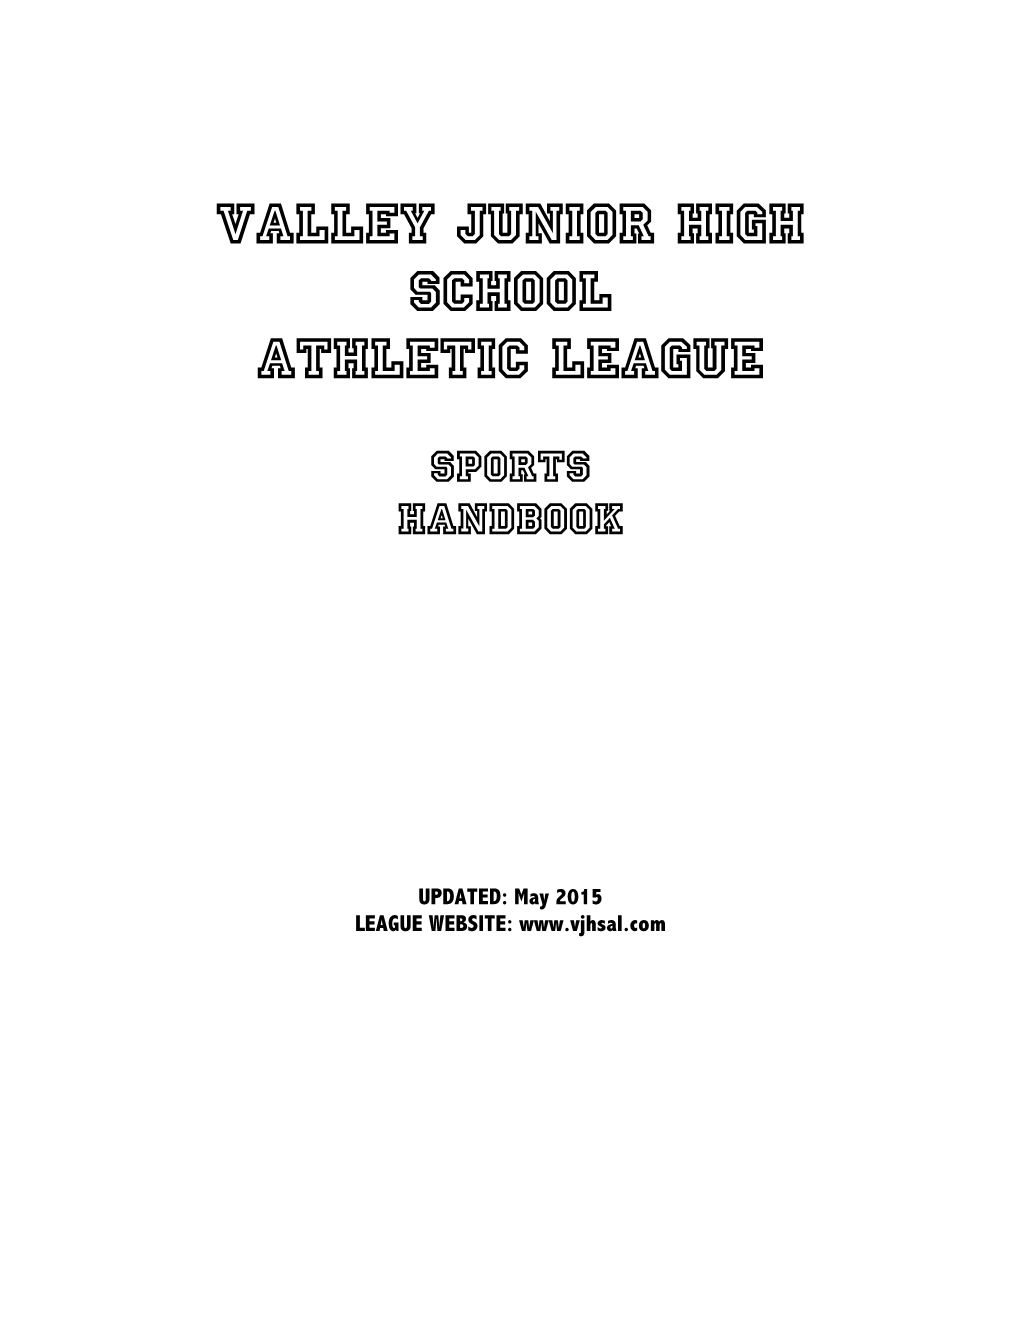 Valley Junior High School Athletic League